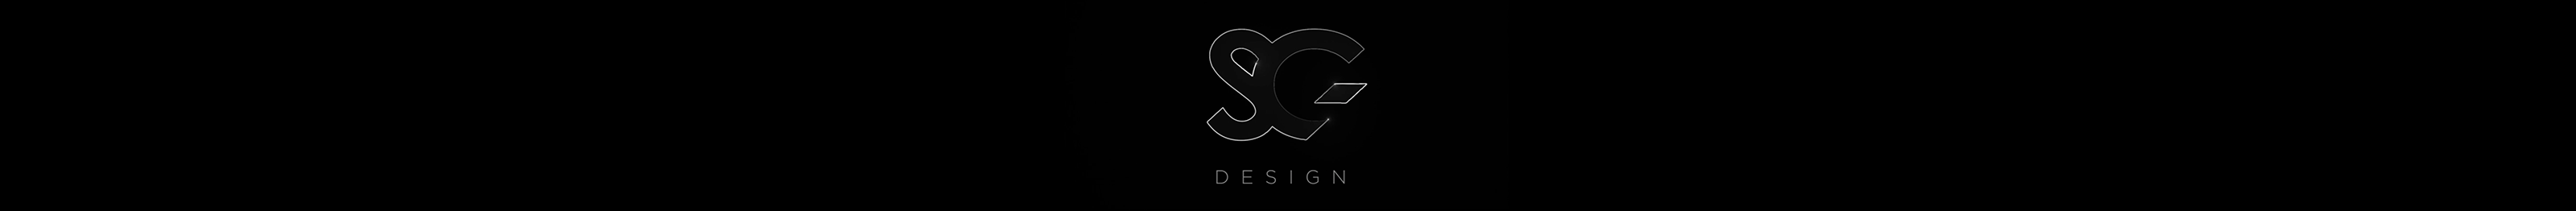 SG DESIGN profil başlığı